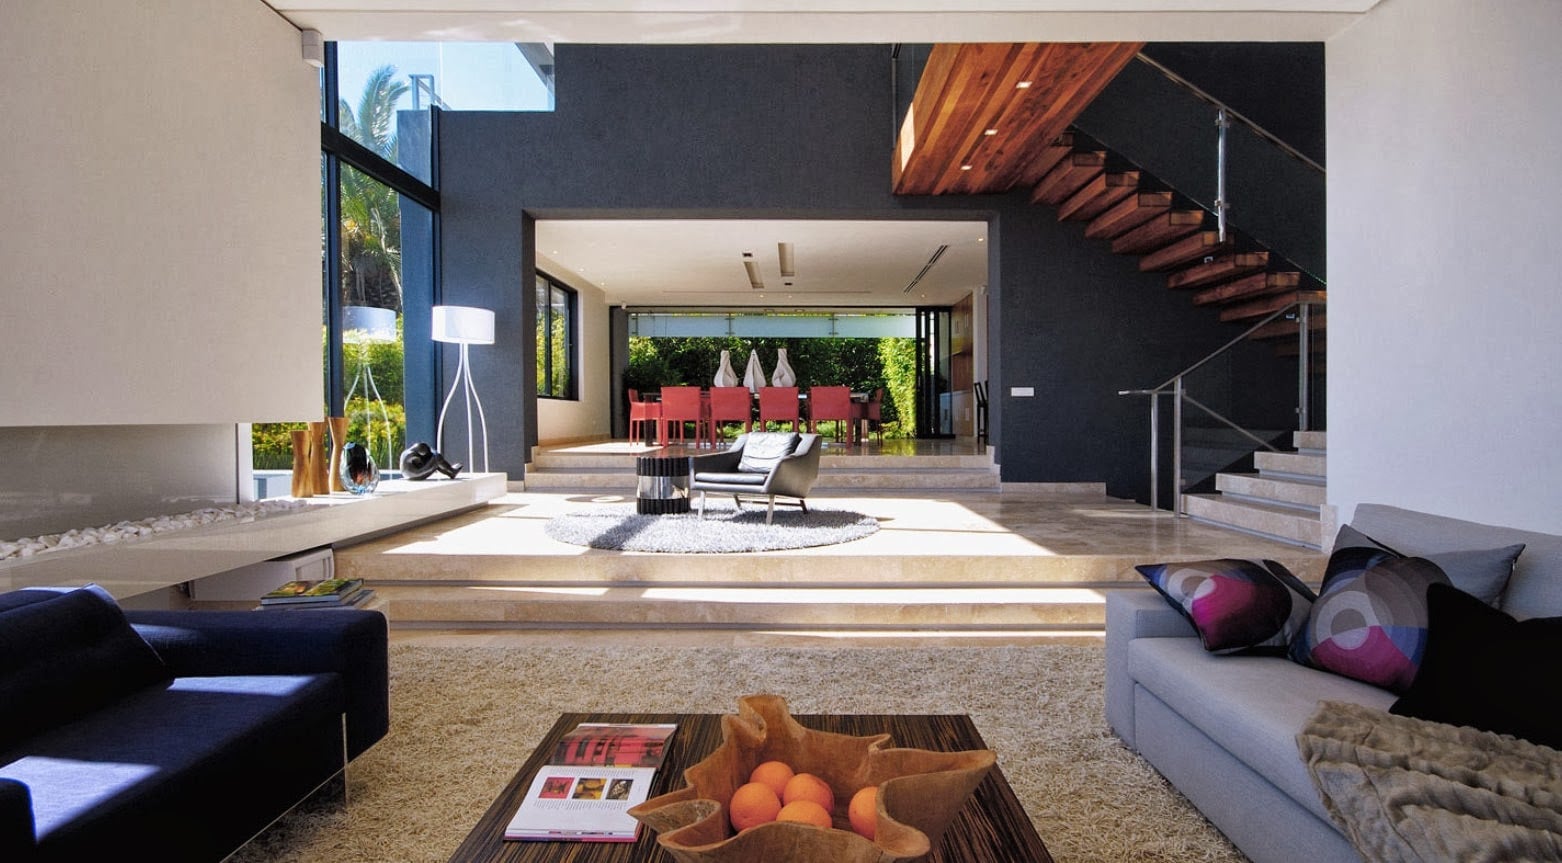 Cantik Desain Interior Rumah Idaman Terbaru 70 Tentang Inspirasi Ide Desain Interior Rumah oleh Desain Interior Rumah Idaman Terbaru